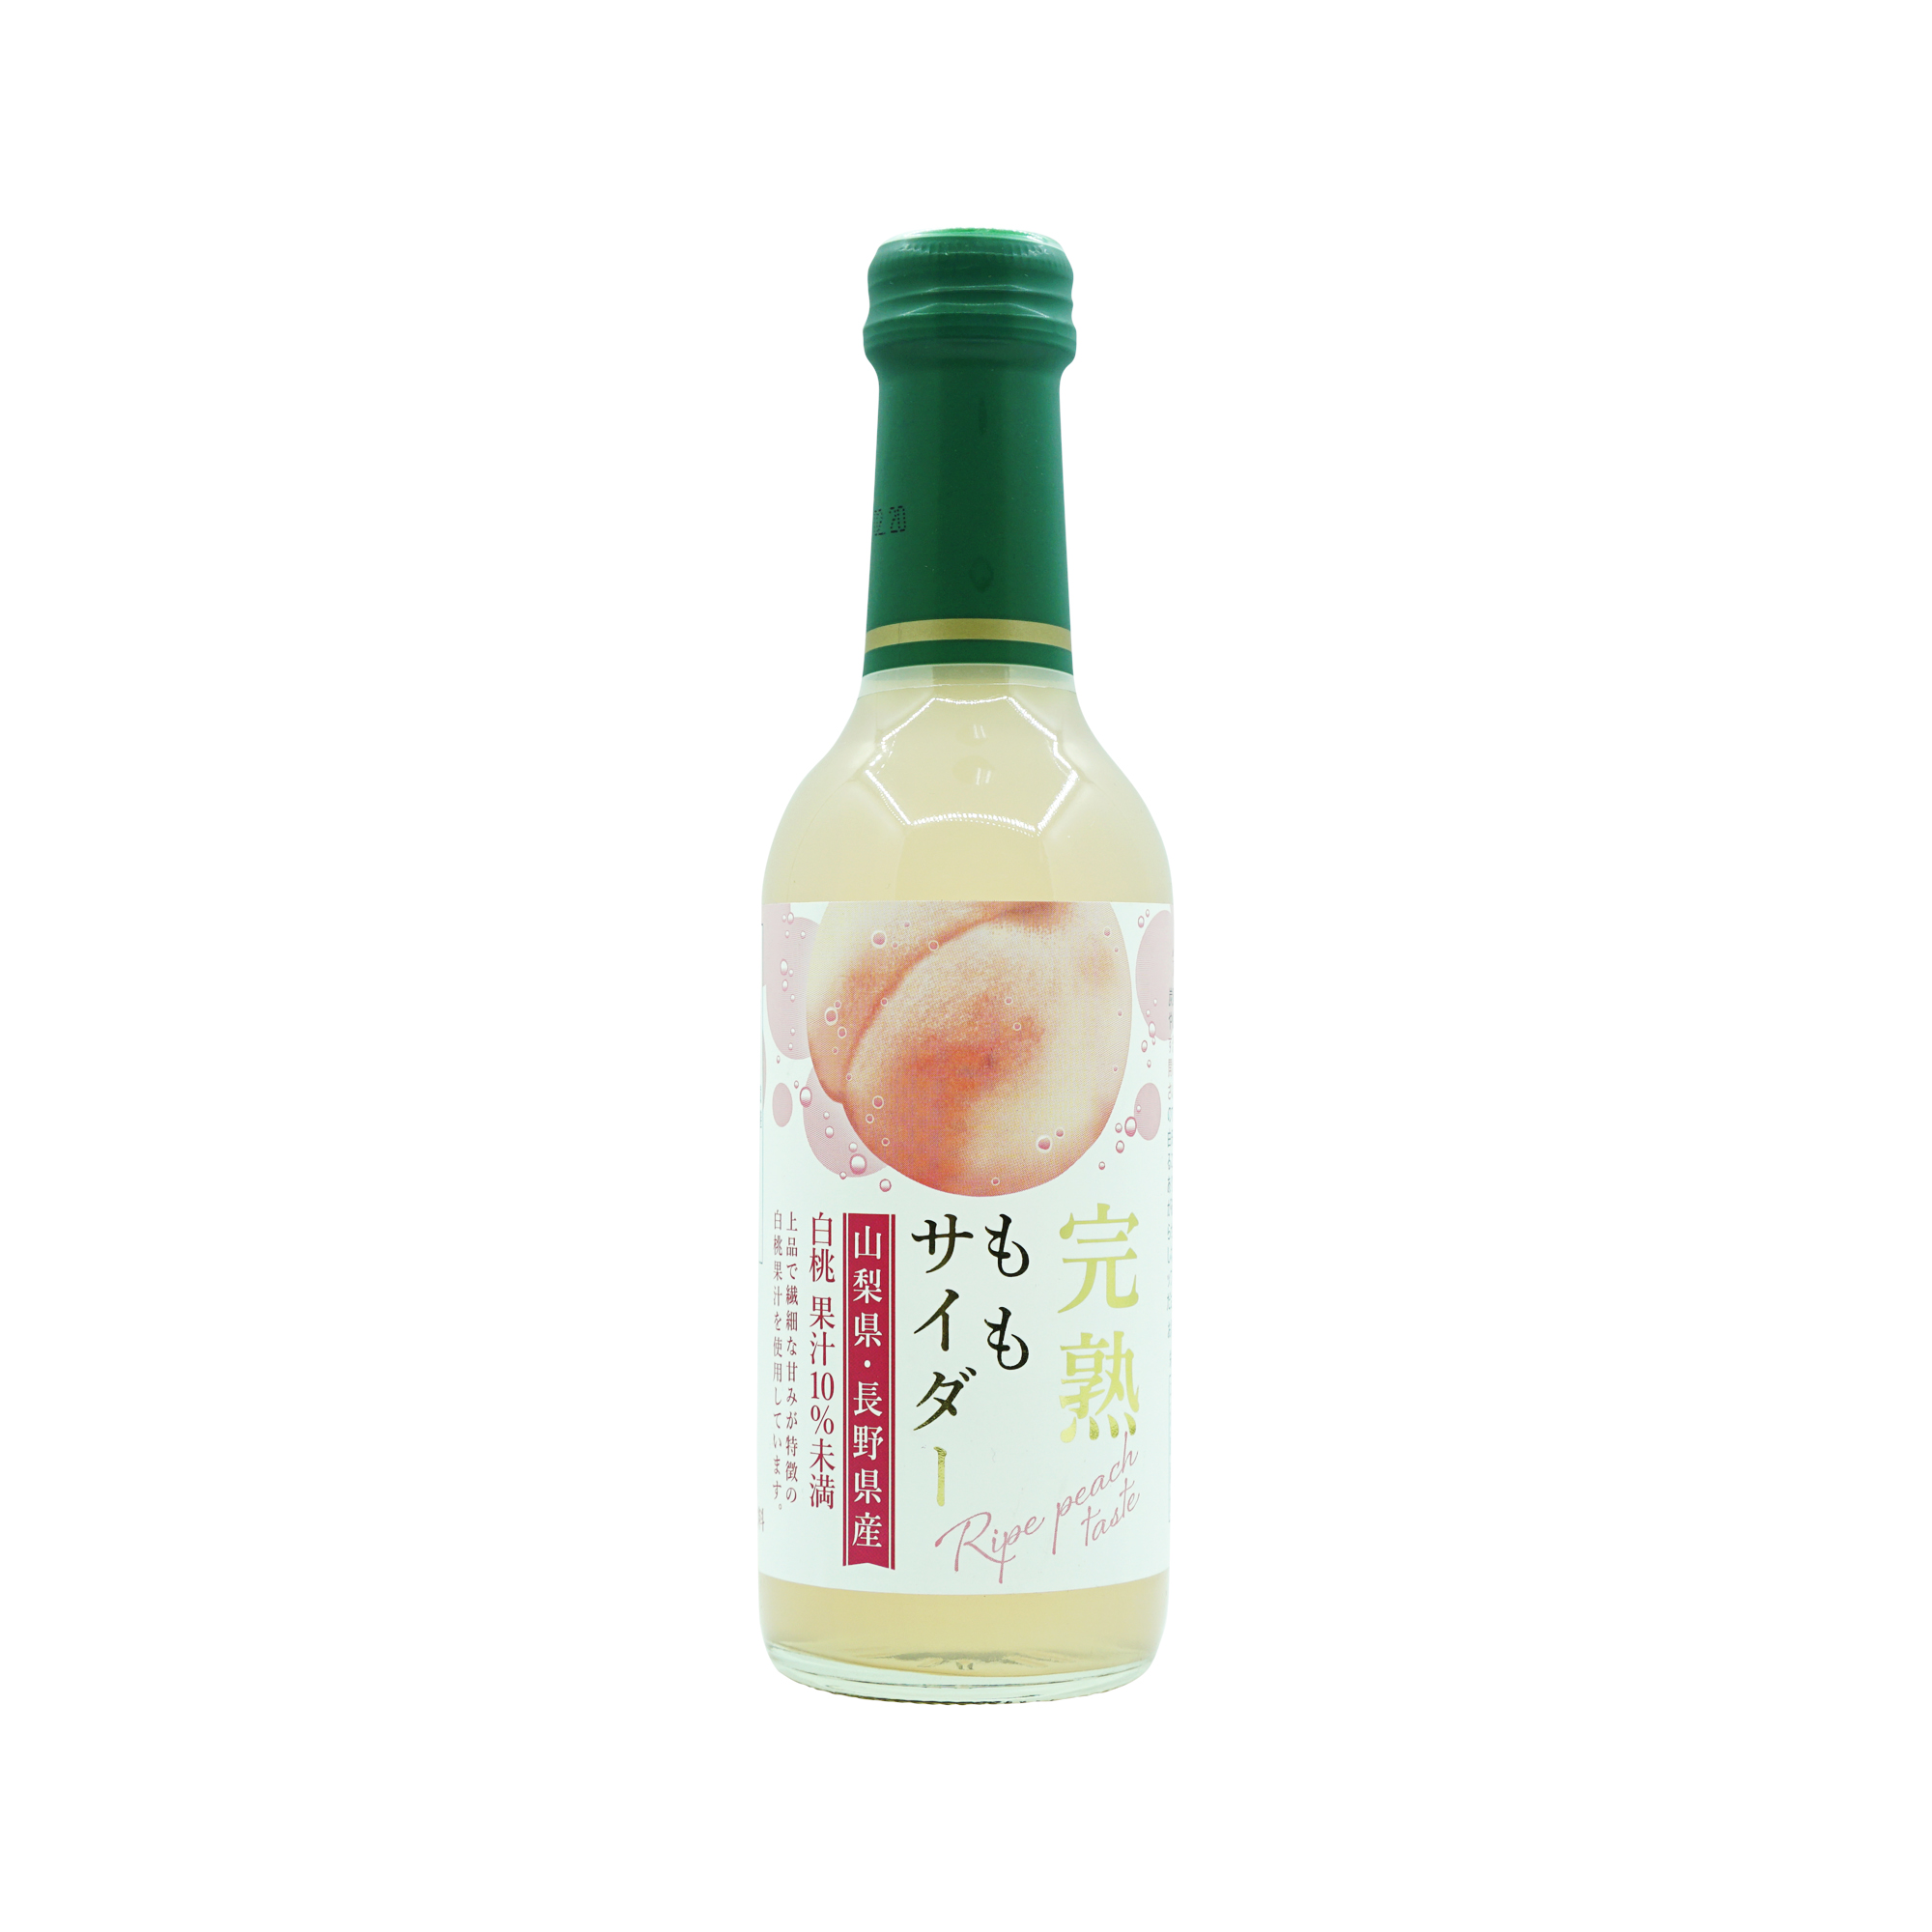 Kimura Peach Soft Drink (240ml)